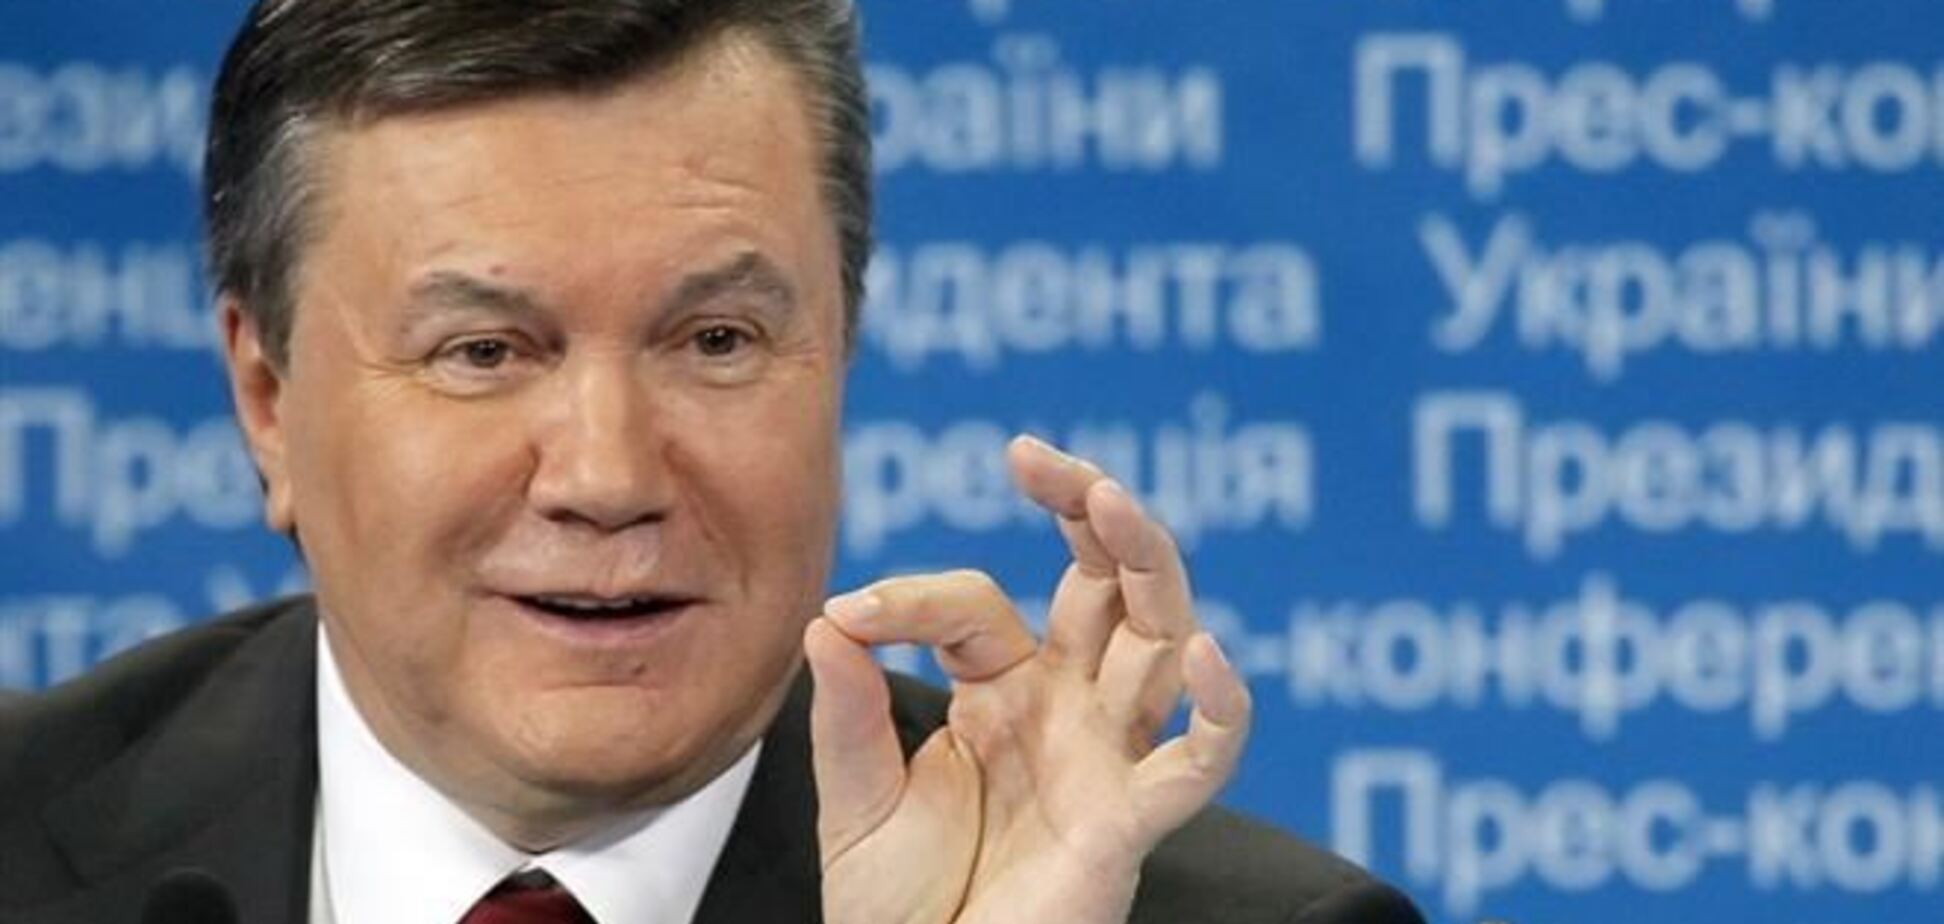 Янукович примет участие в Высшем евразийском совете